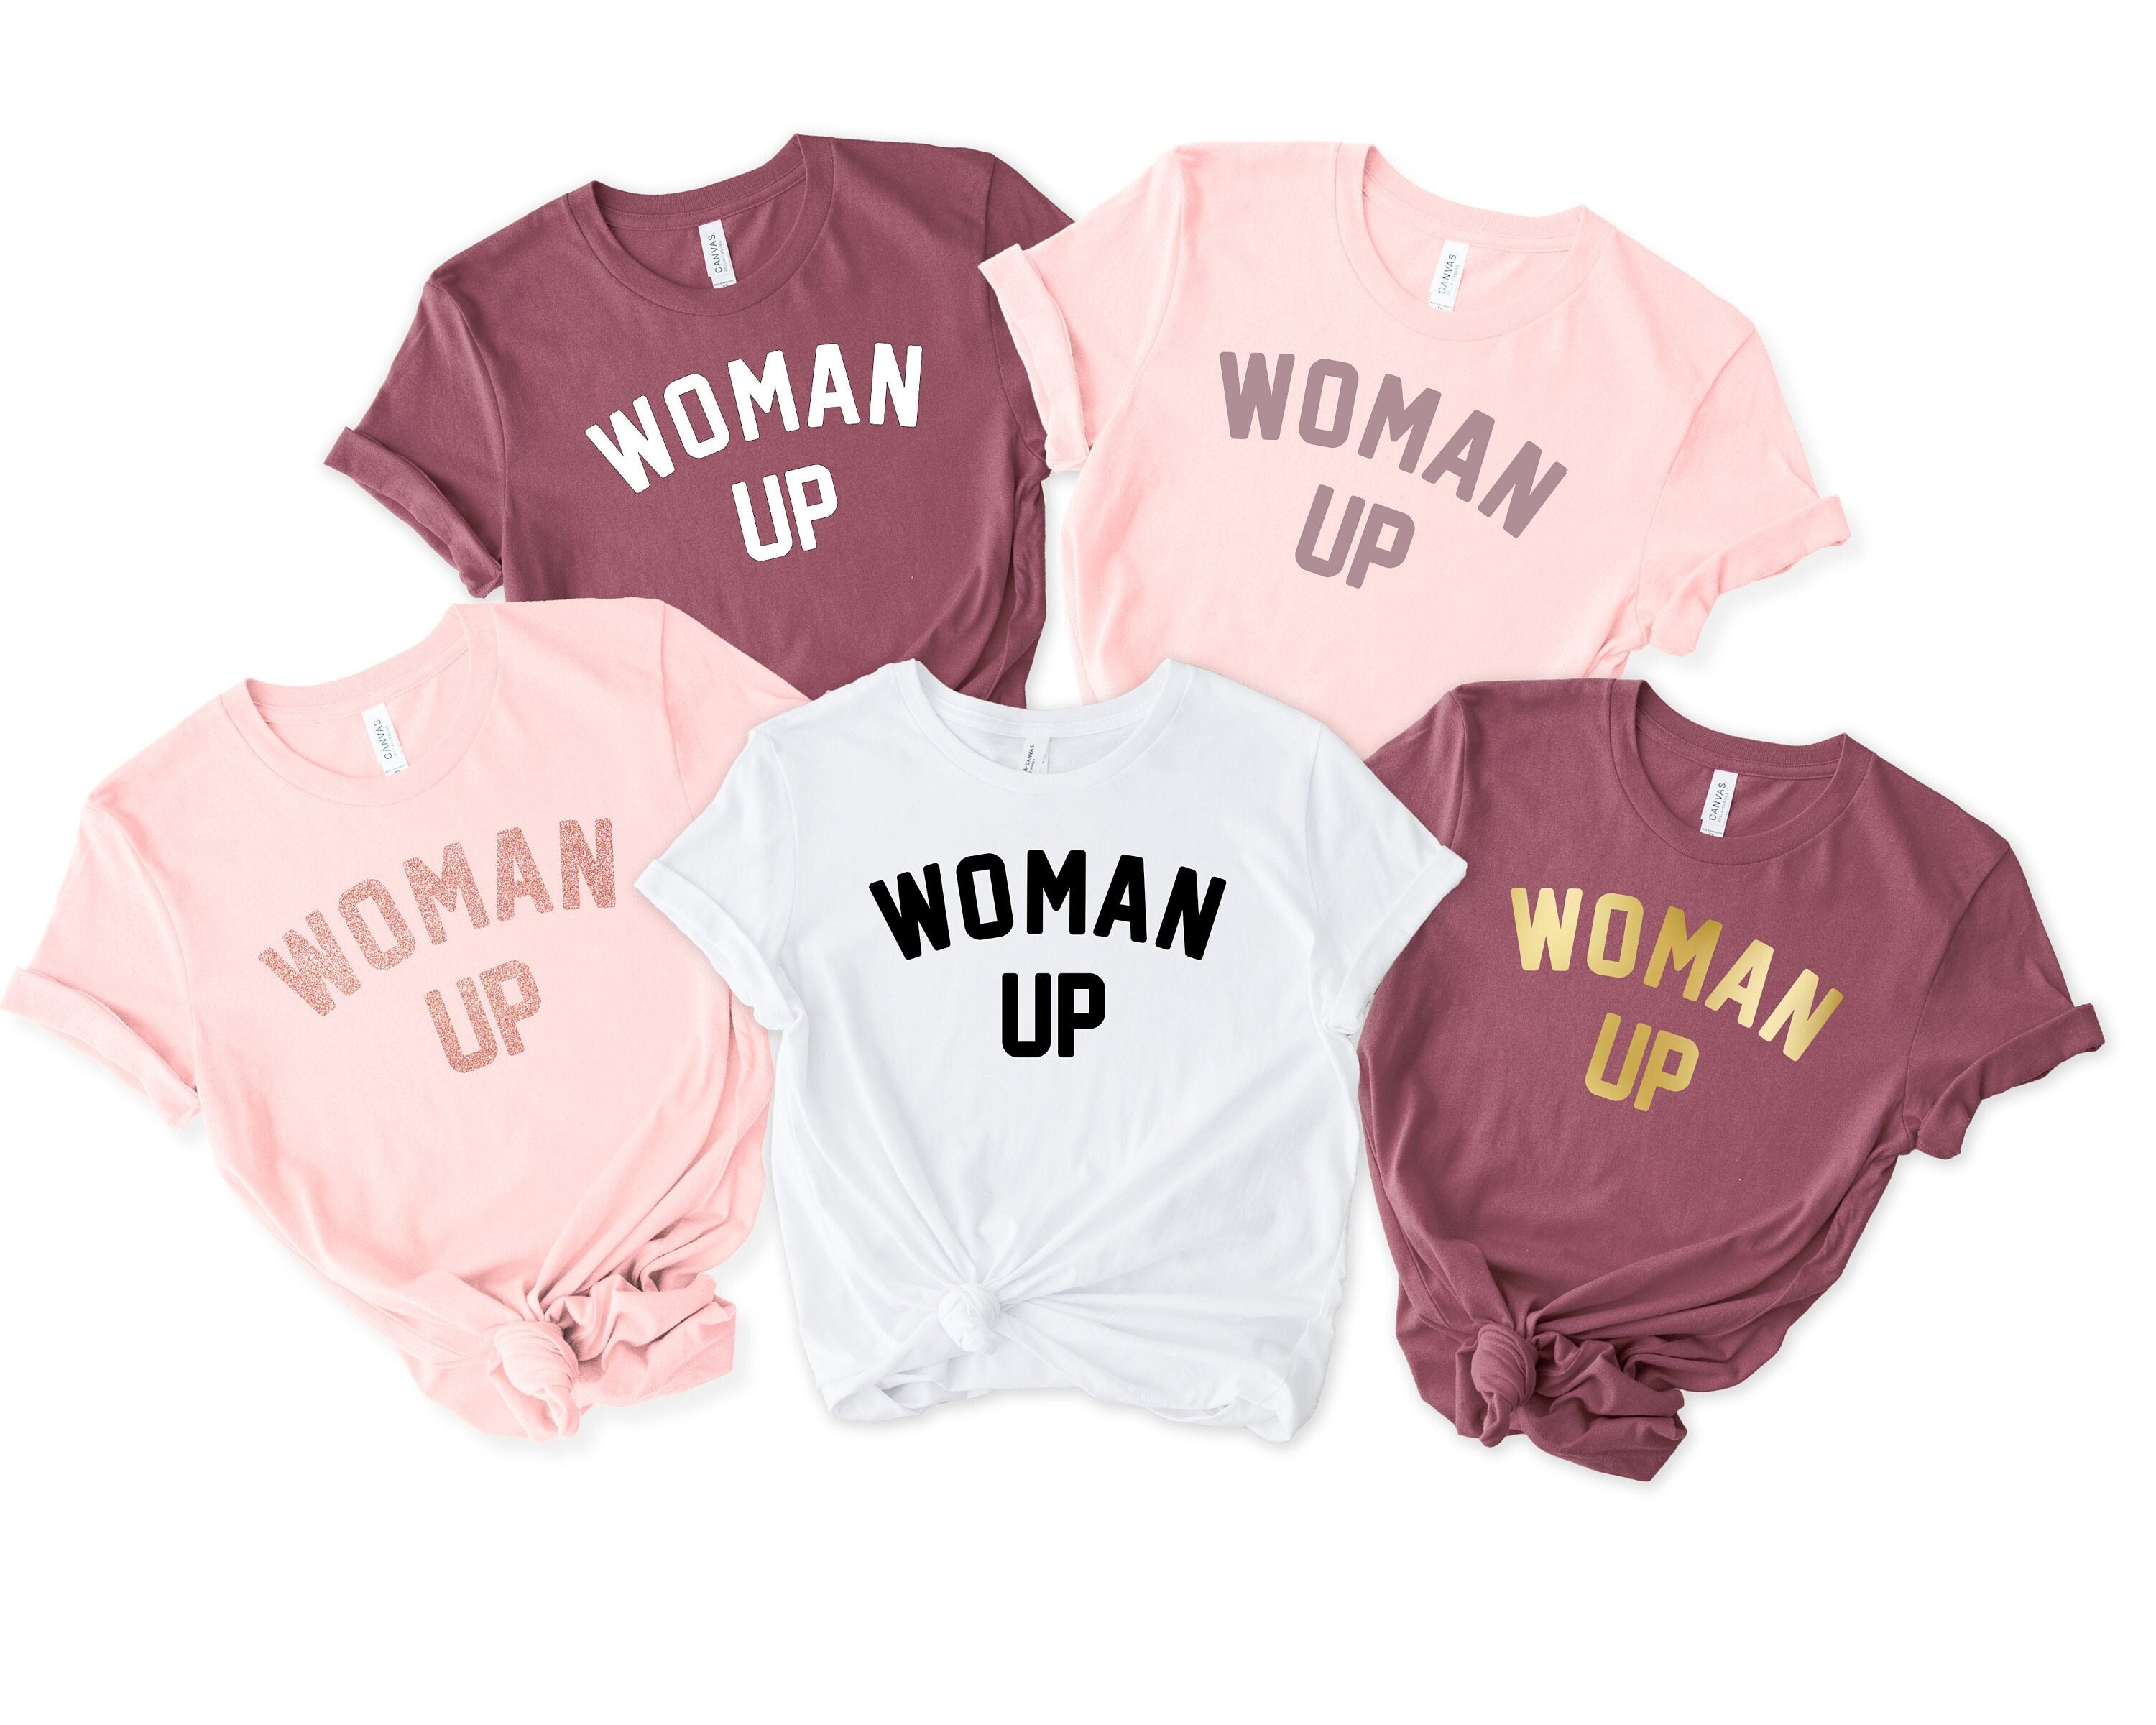 Shirts Feminism Inspirational Shirt Feminist Shirt Woman Up Tee Woman Up Shirt Empowered Women Shirt Motivational Shirt Feminist Tee